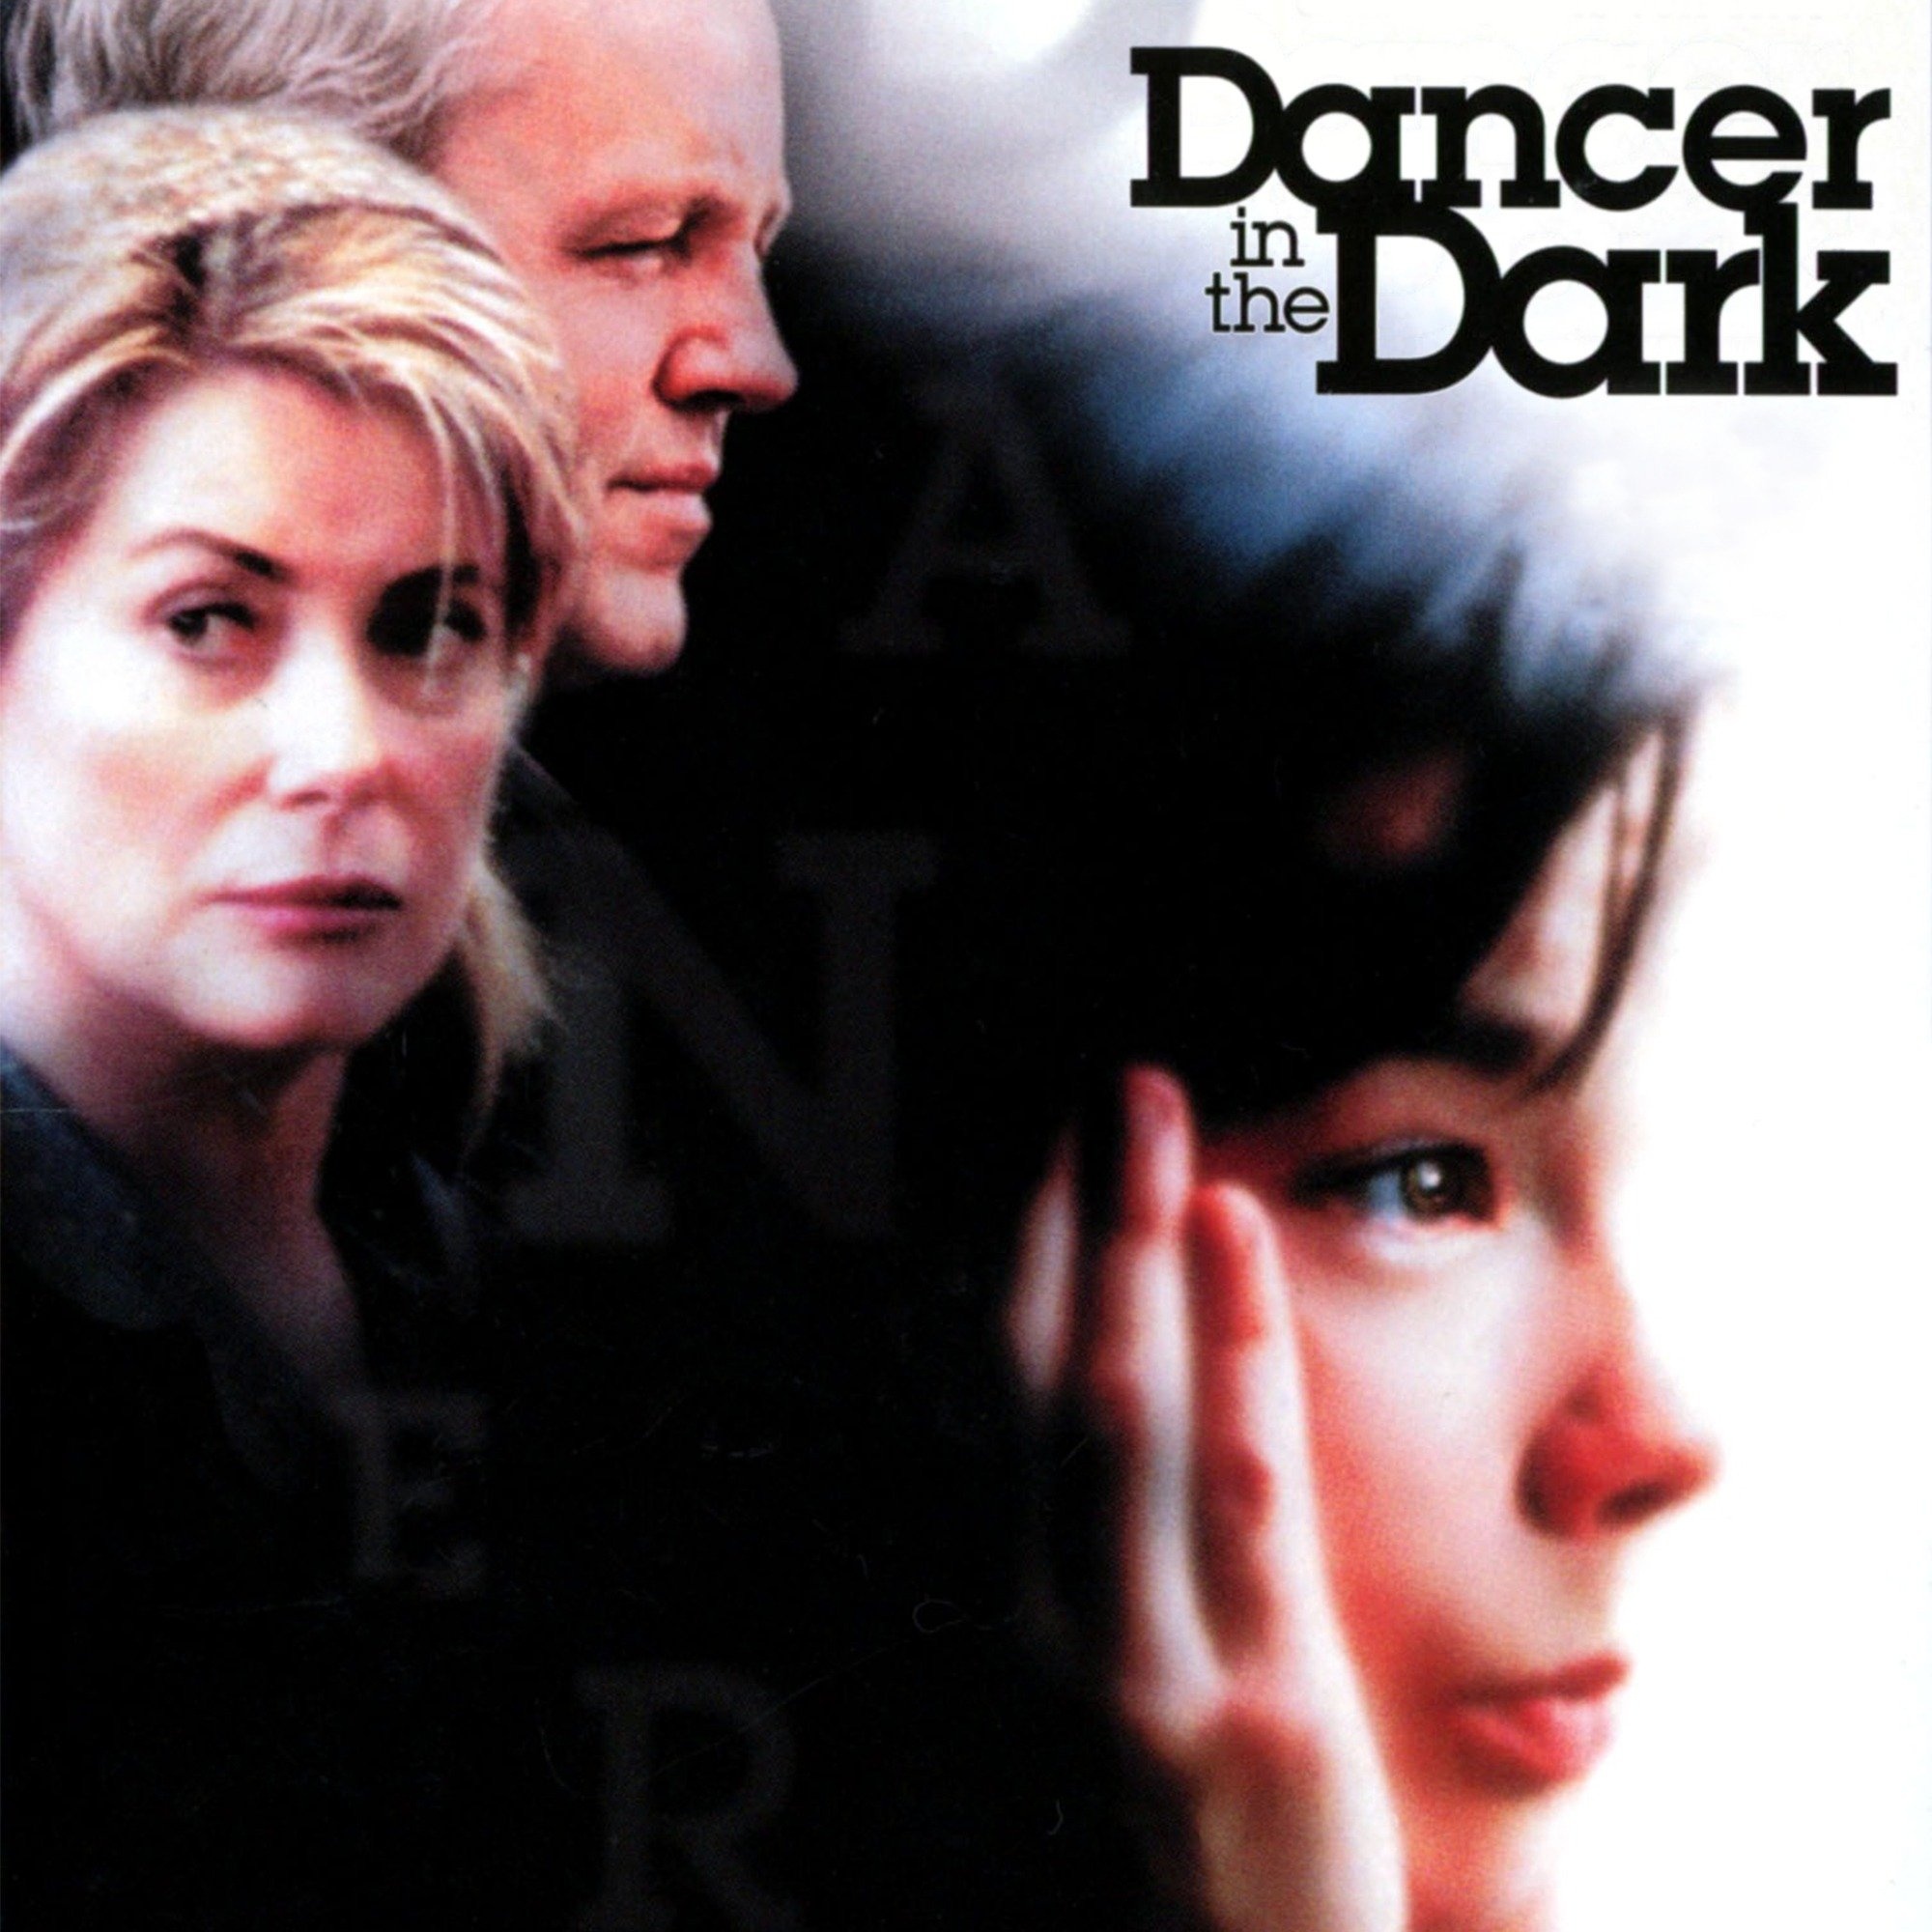 Dancer in the Dark movie, Watch full movie, Online streaming, Plex, 2000x2000 HD Handy